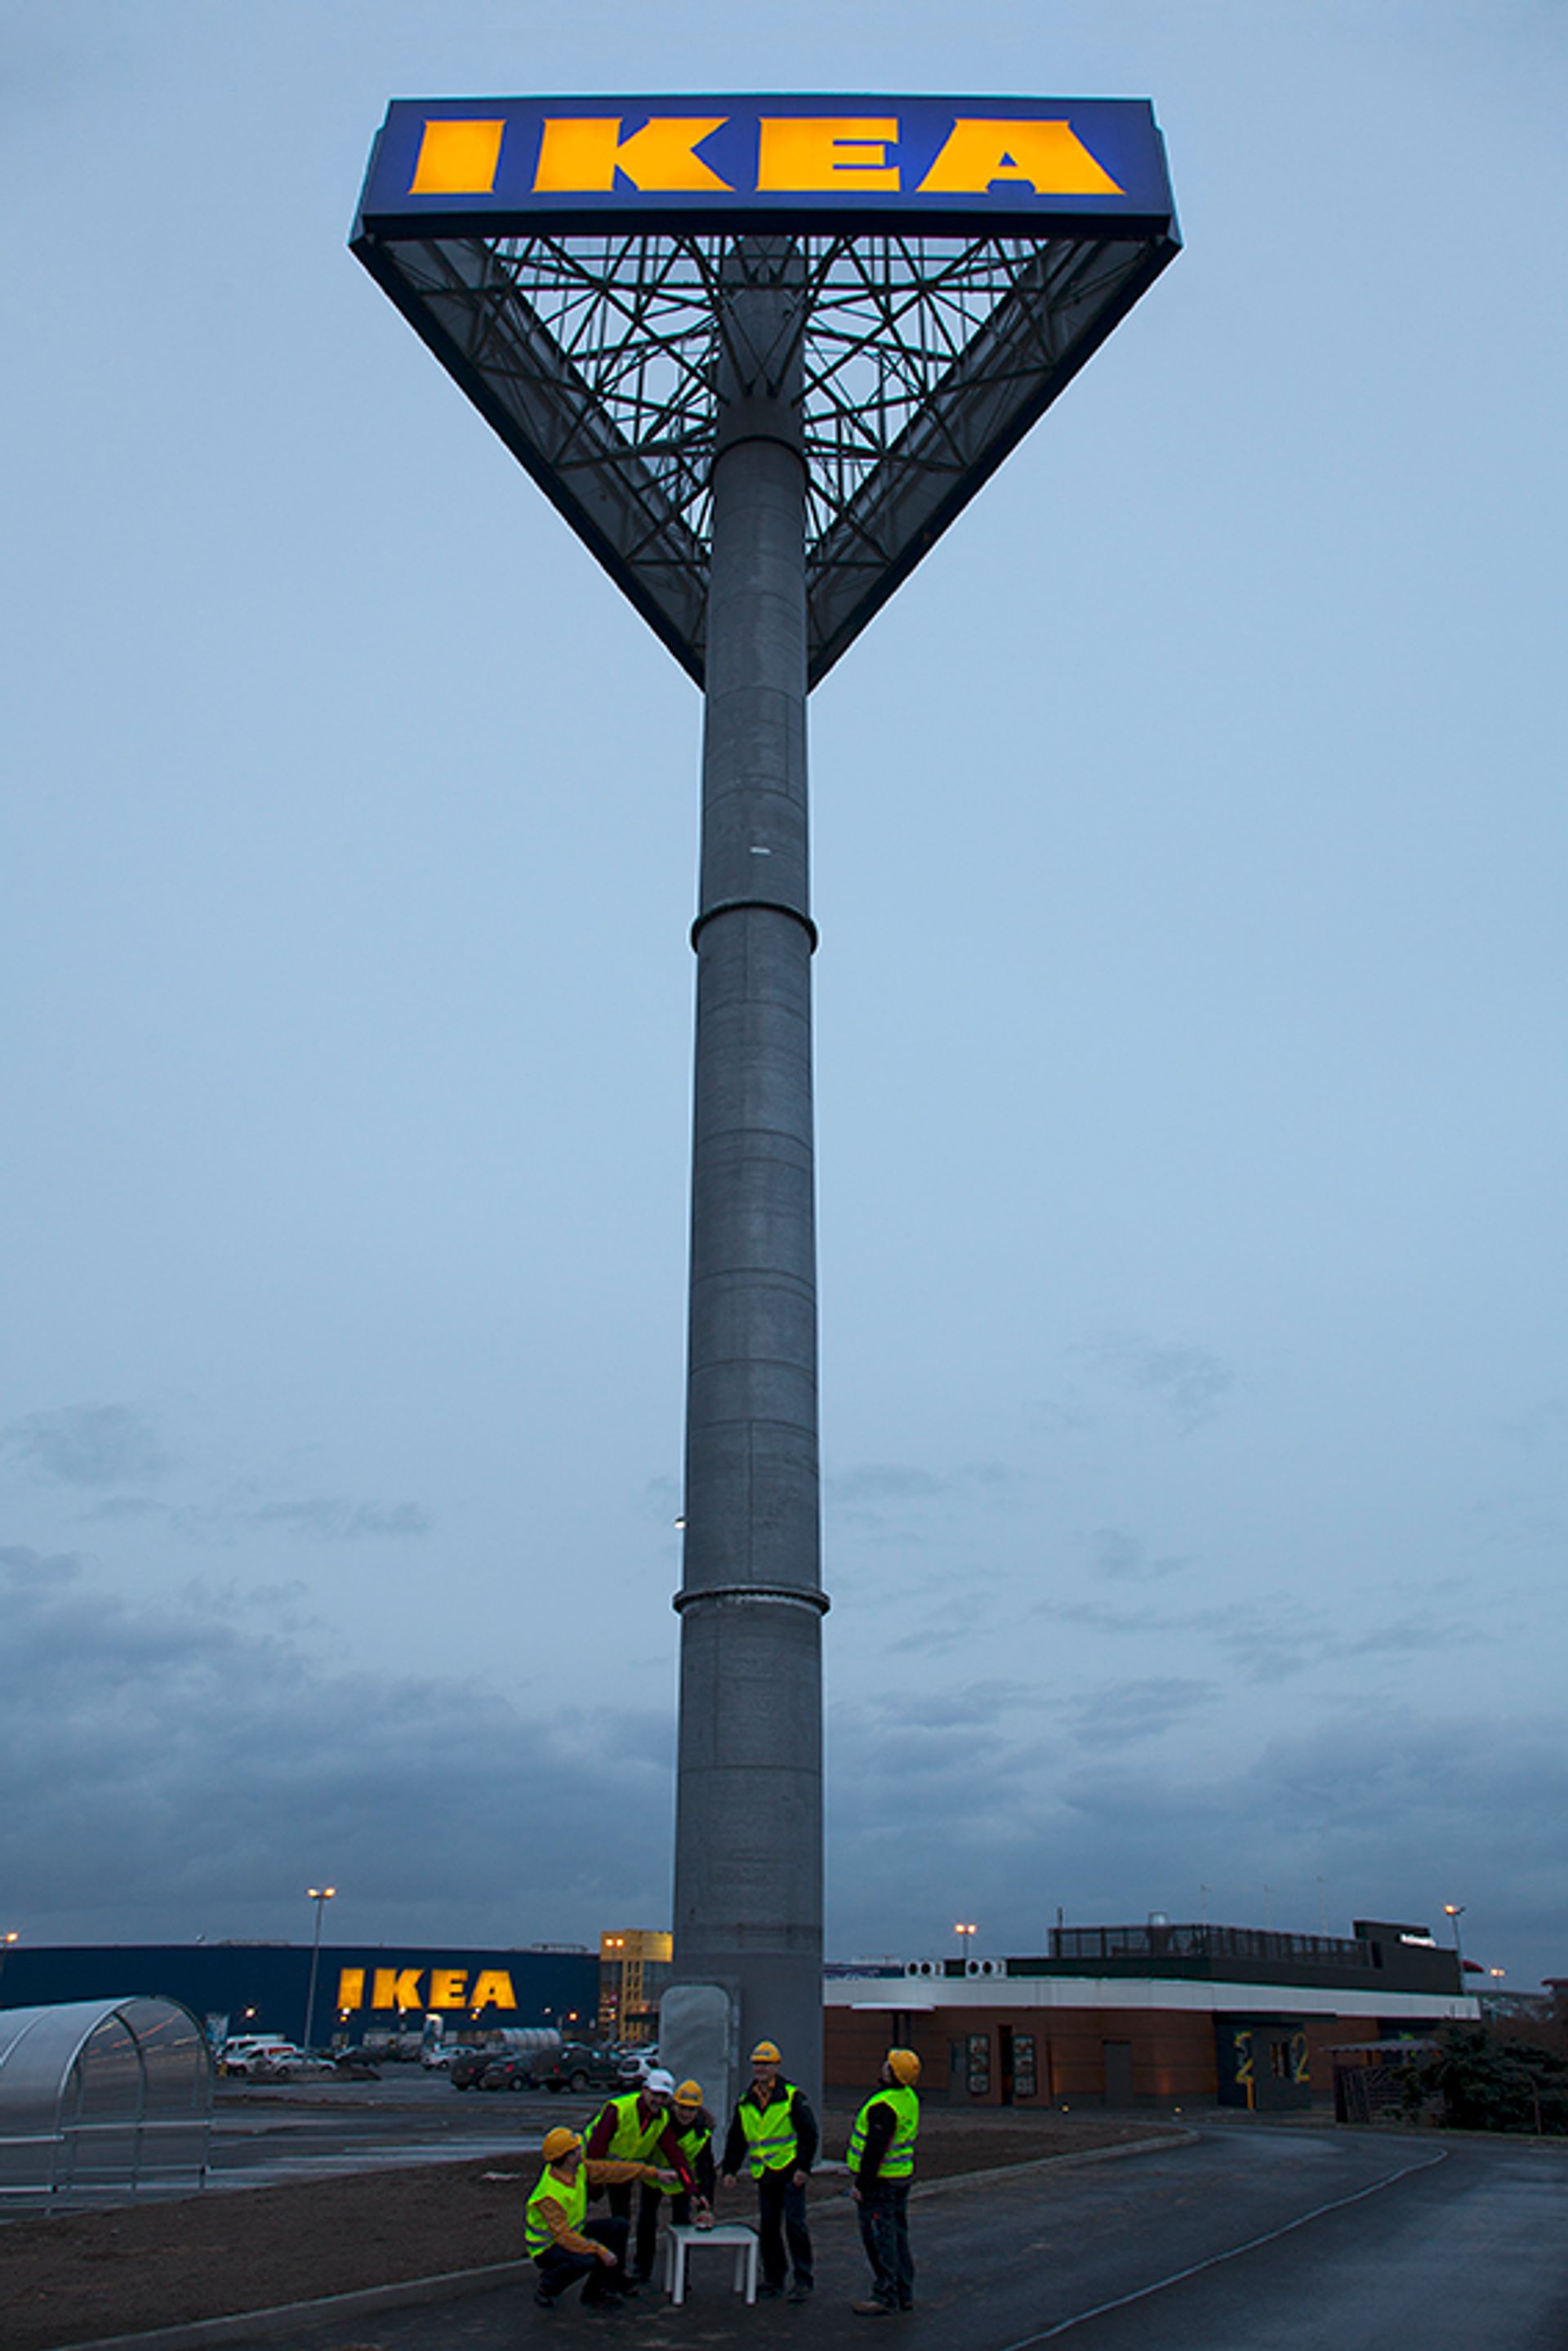  Wieża największego sklepu IKEA w Polsce odpalona! Nowy etap w historii IKEA Wrocław